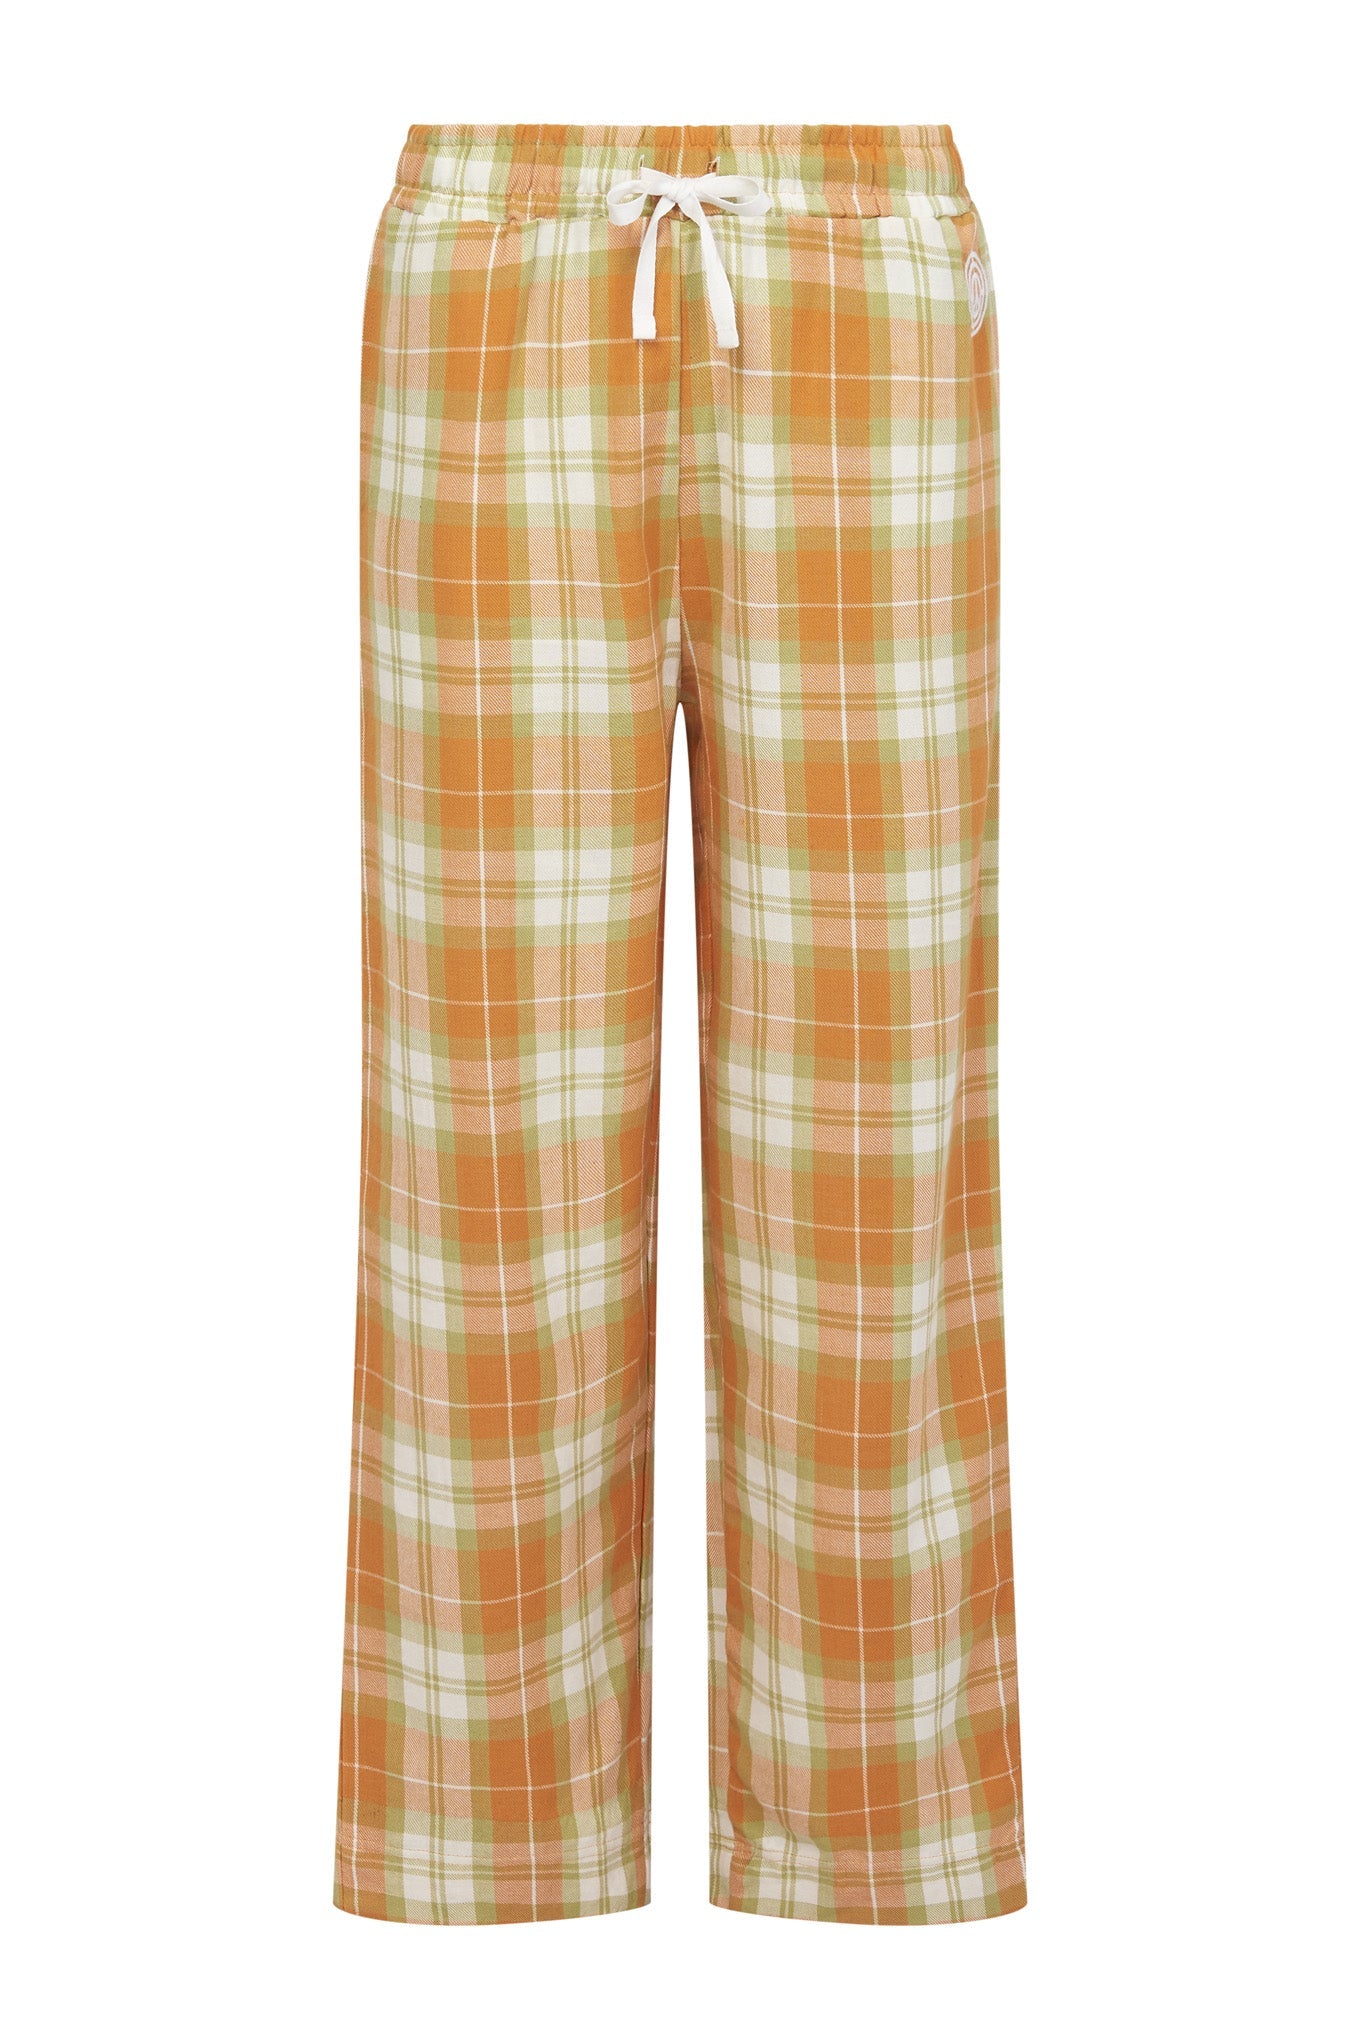 Orange-weisses Pyjama Set JIM JAM aus Bio-Baumwolle von Komodo